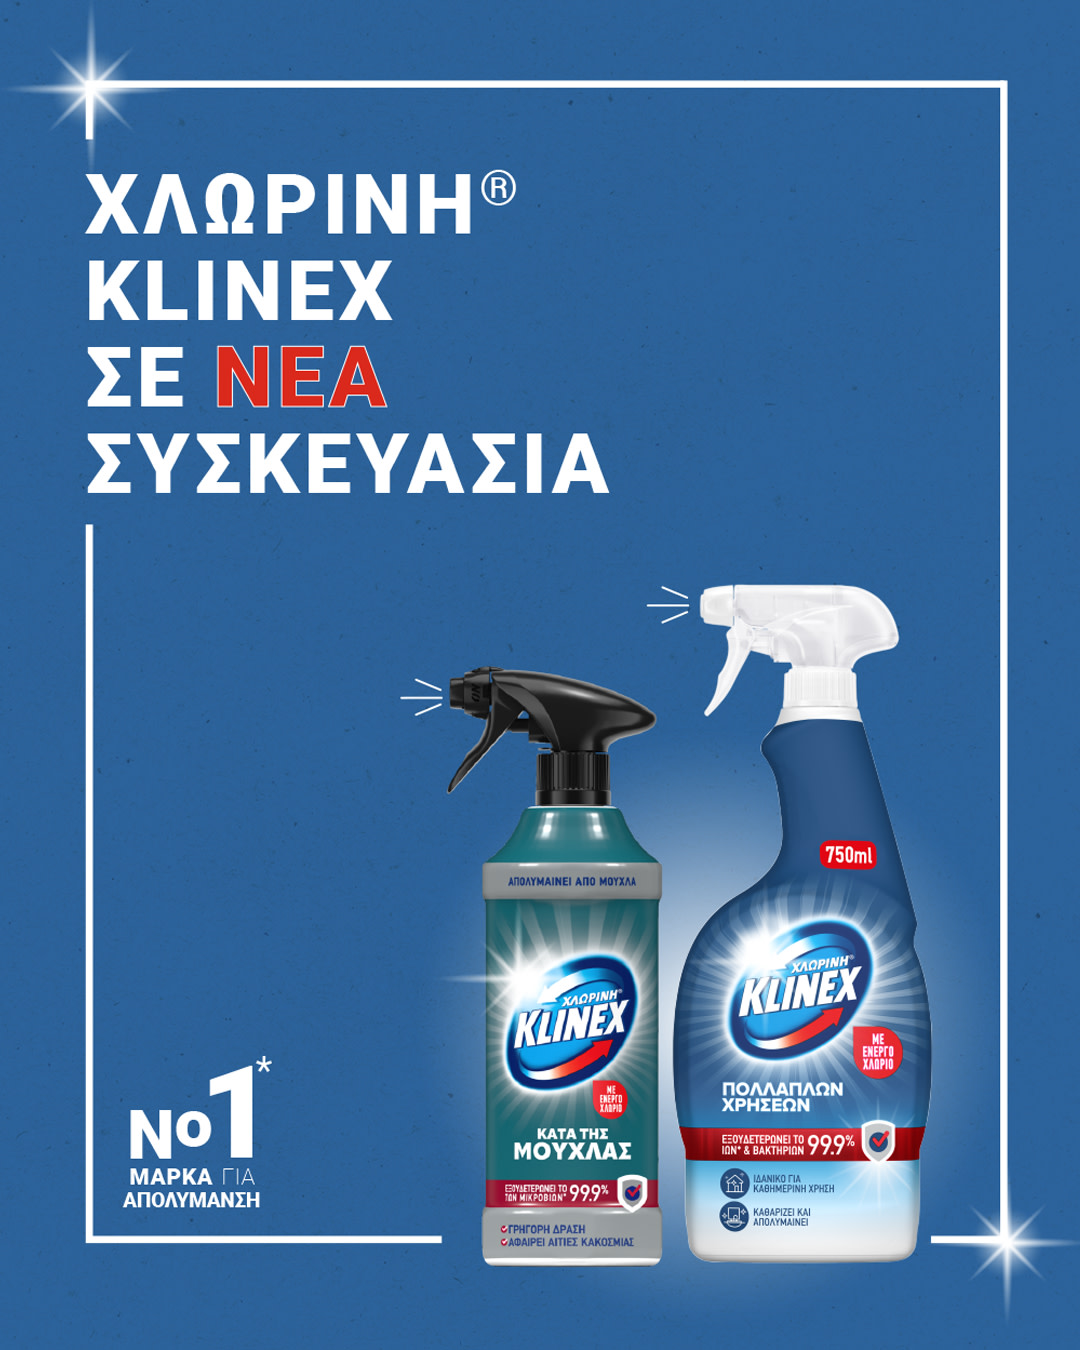 Klinex bleach sprays header